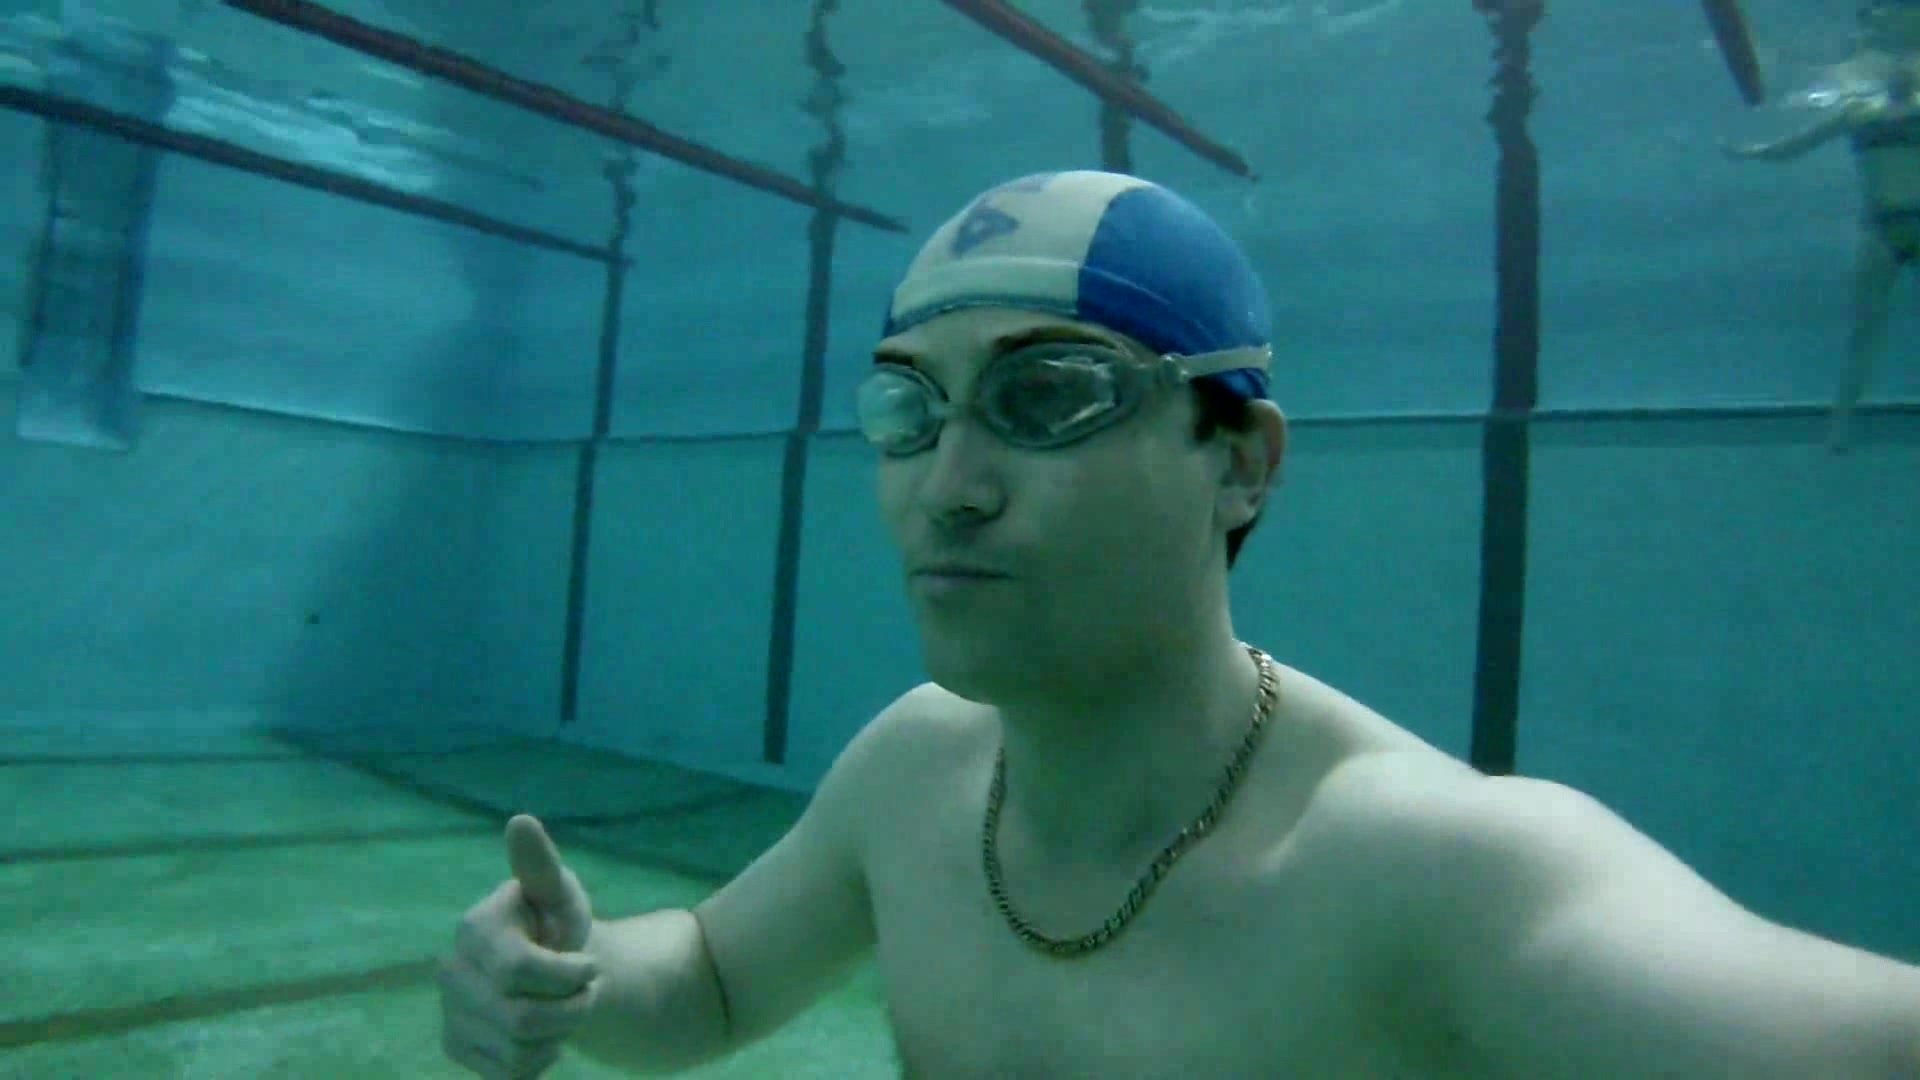 Speedo russian breaholding underwater in pool